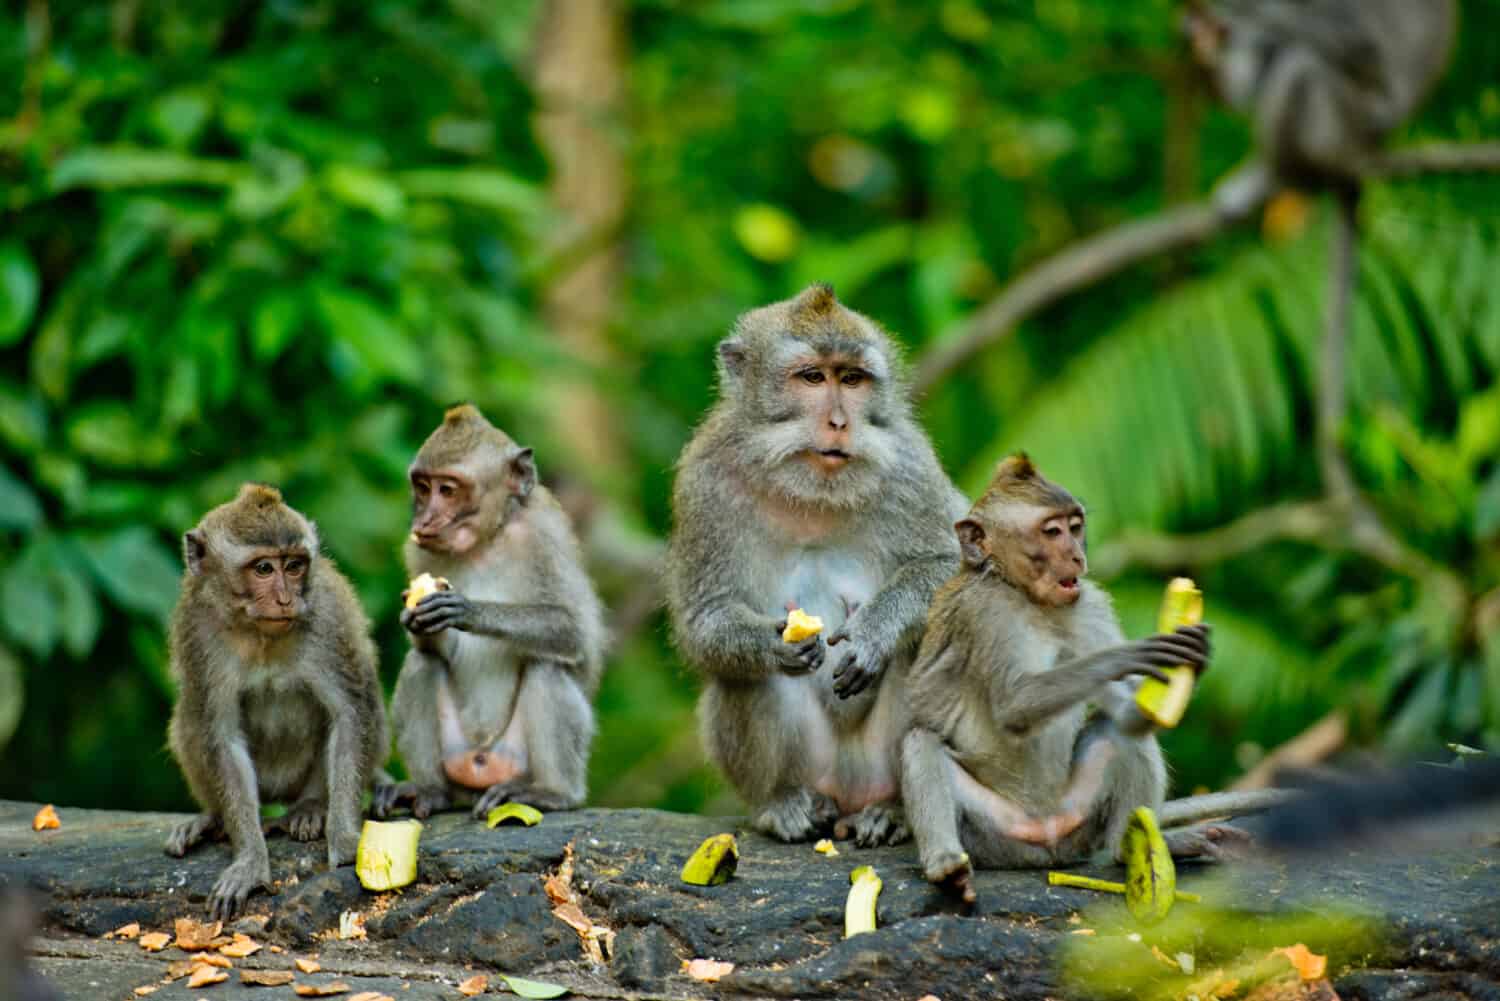 Le scimmie adulte si siedono e mangiano banane nella foresta.  Foresta delle scimmie, Ubud, Bali, Indonesia.